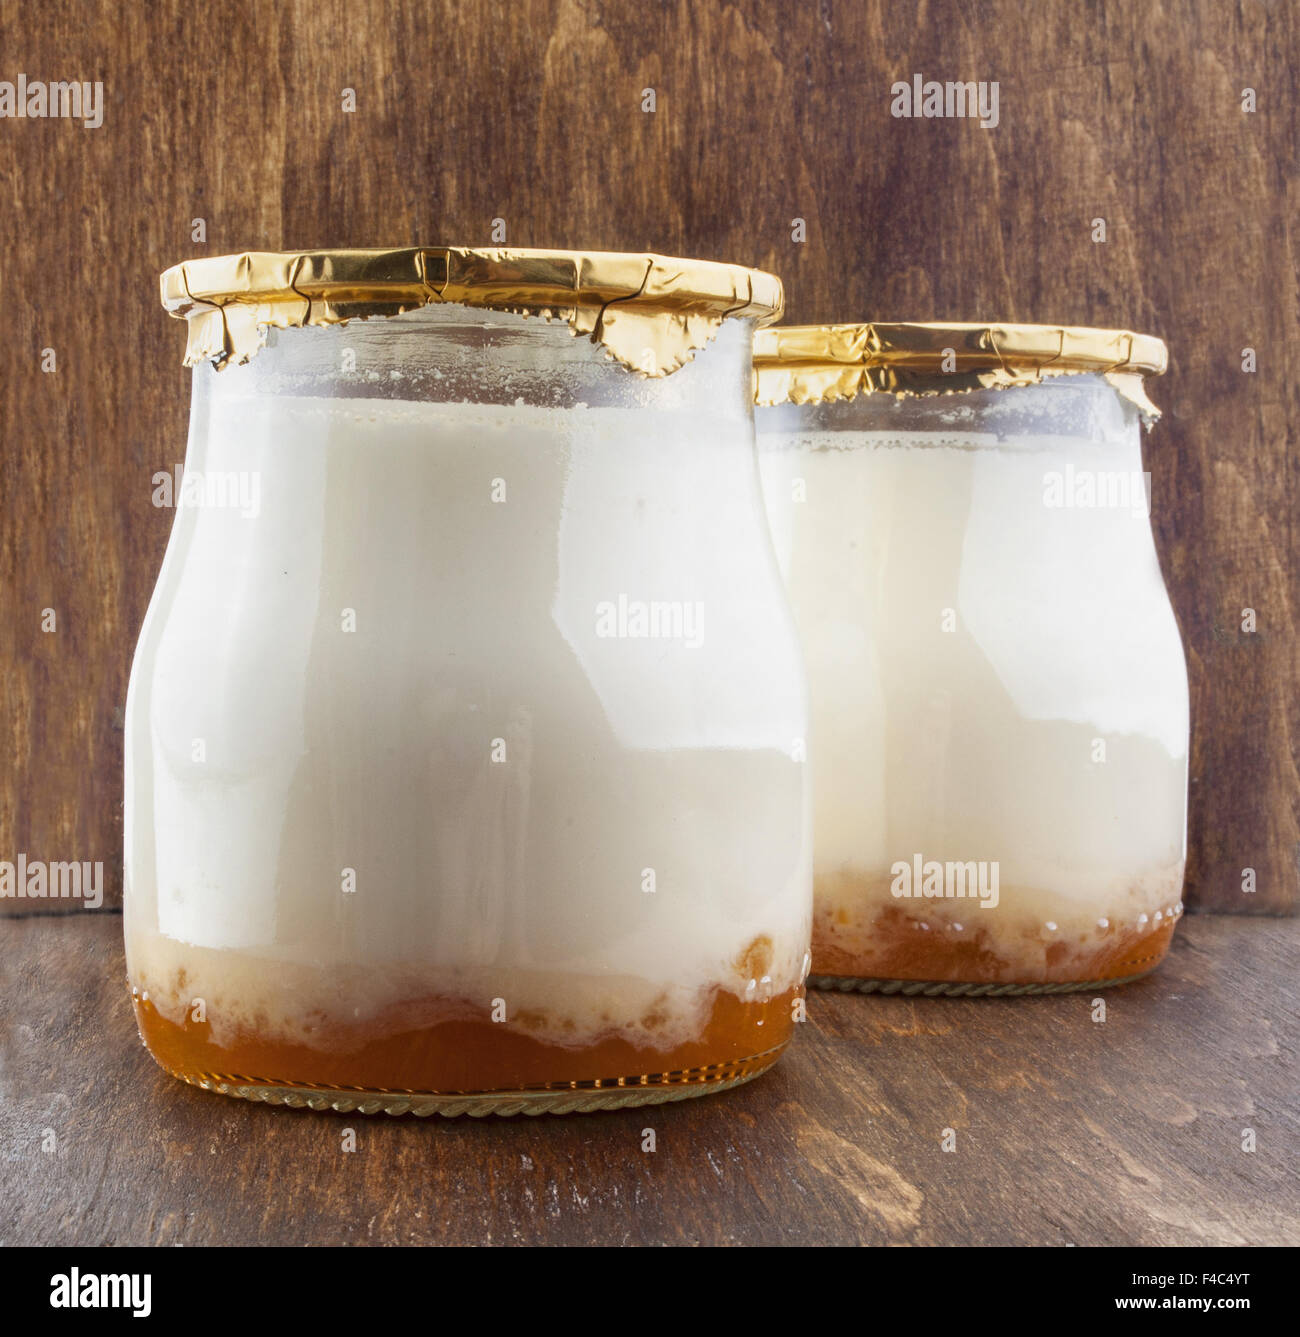 Yogur griego en un frasco de vidrio Fotografía de stock - Alamy